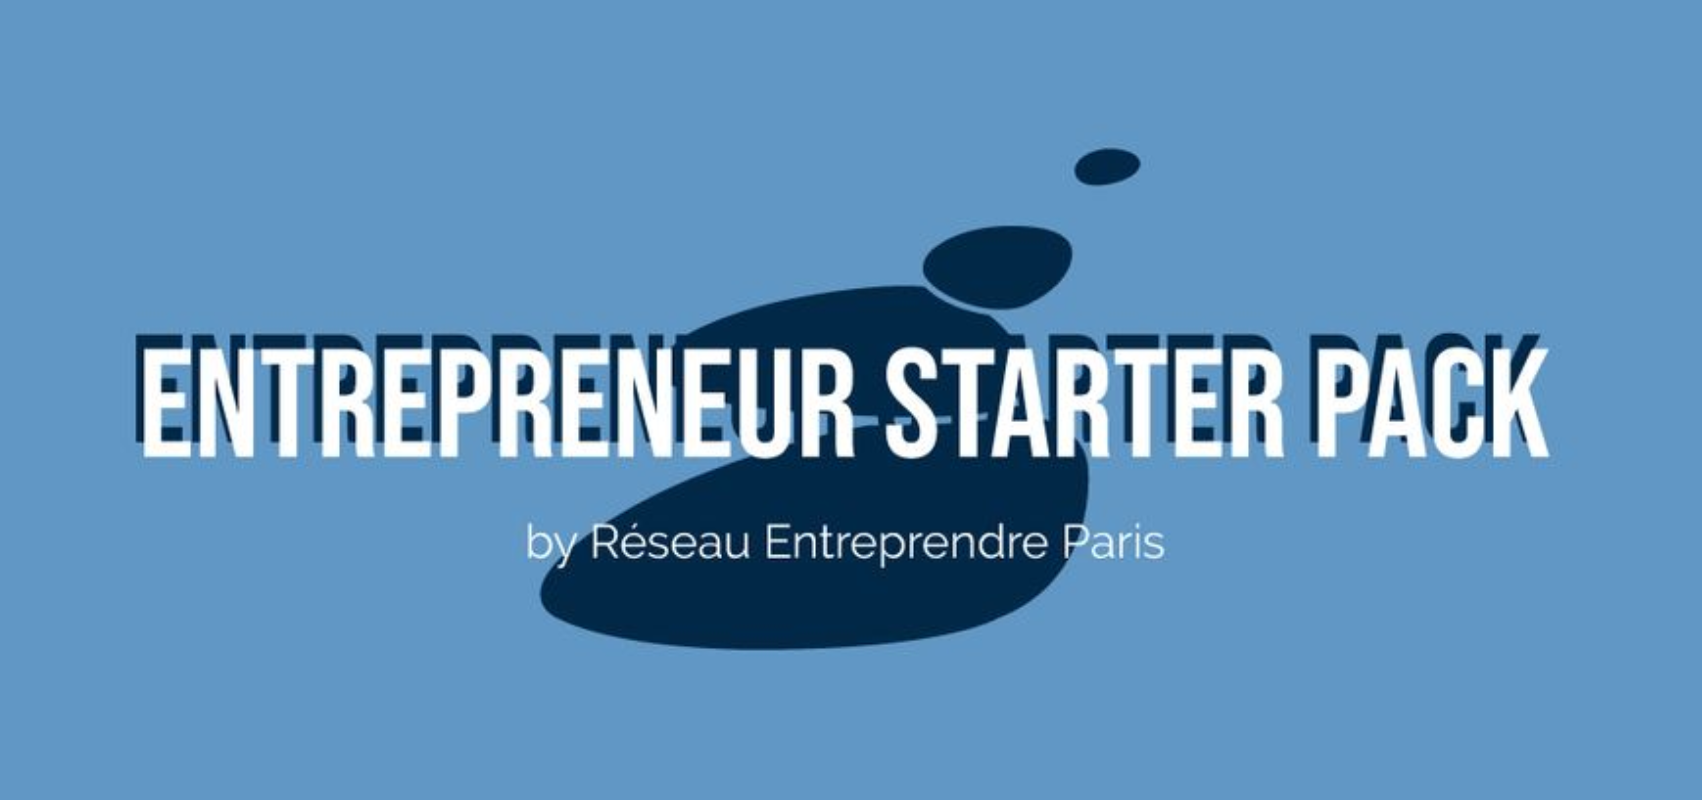 Entrepreneur Starter Pack by Réseau Entreprendre Paris